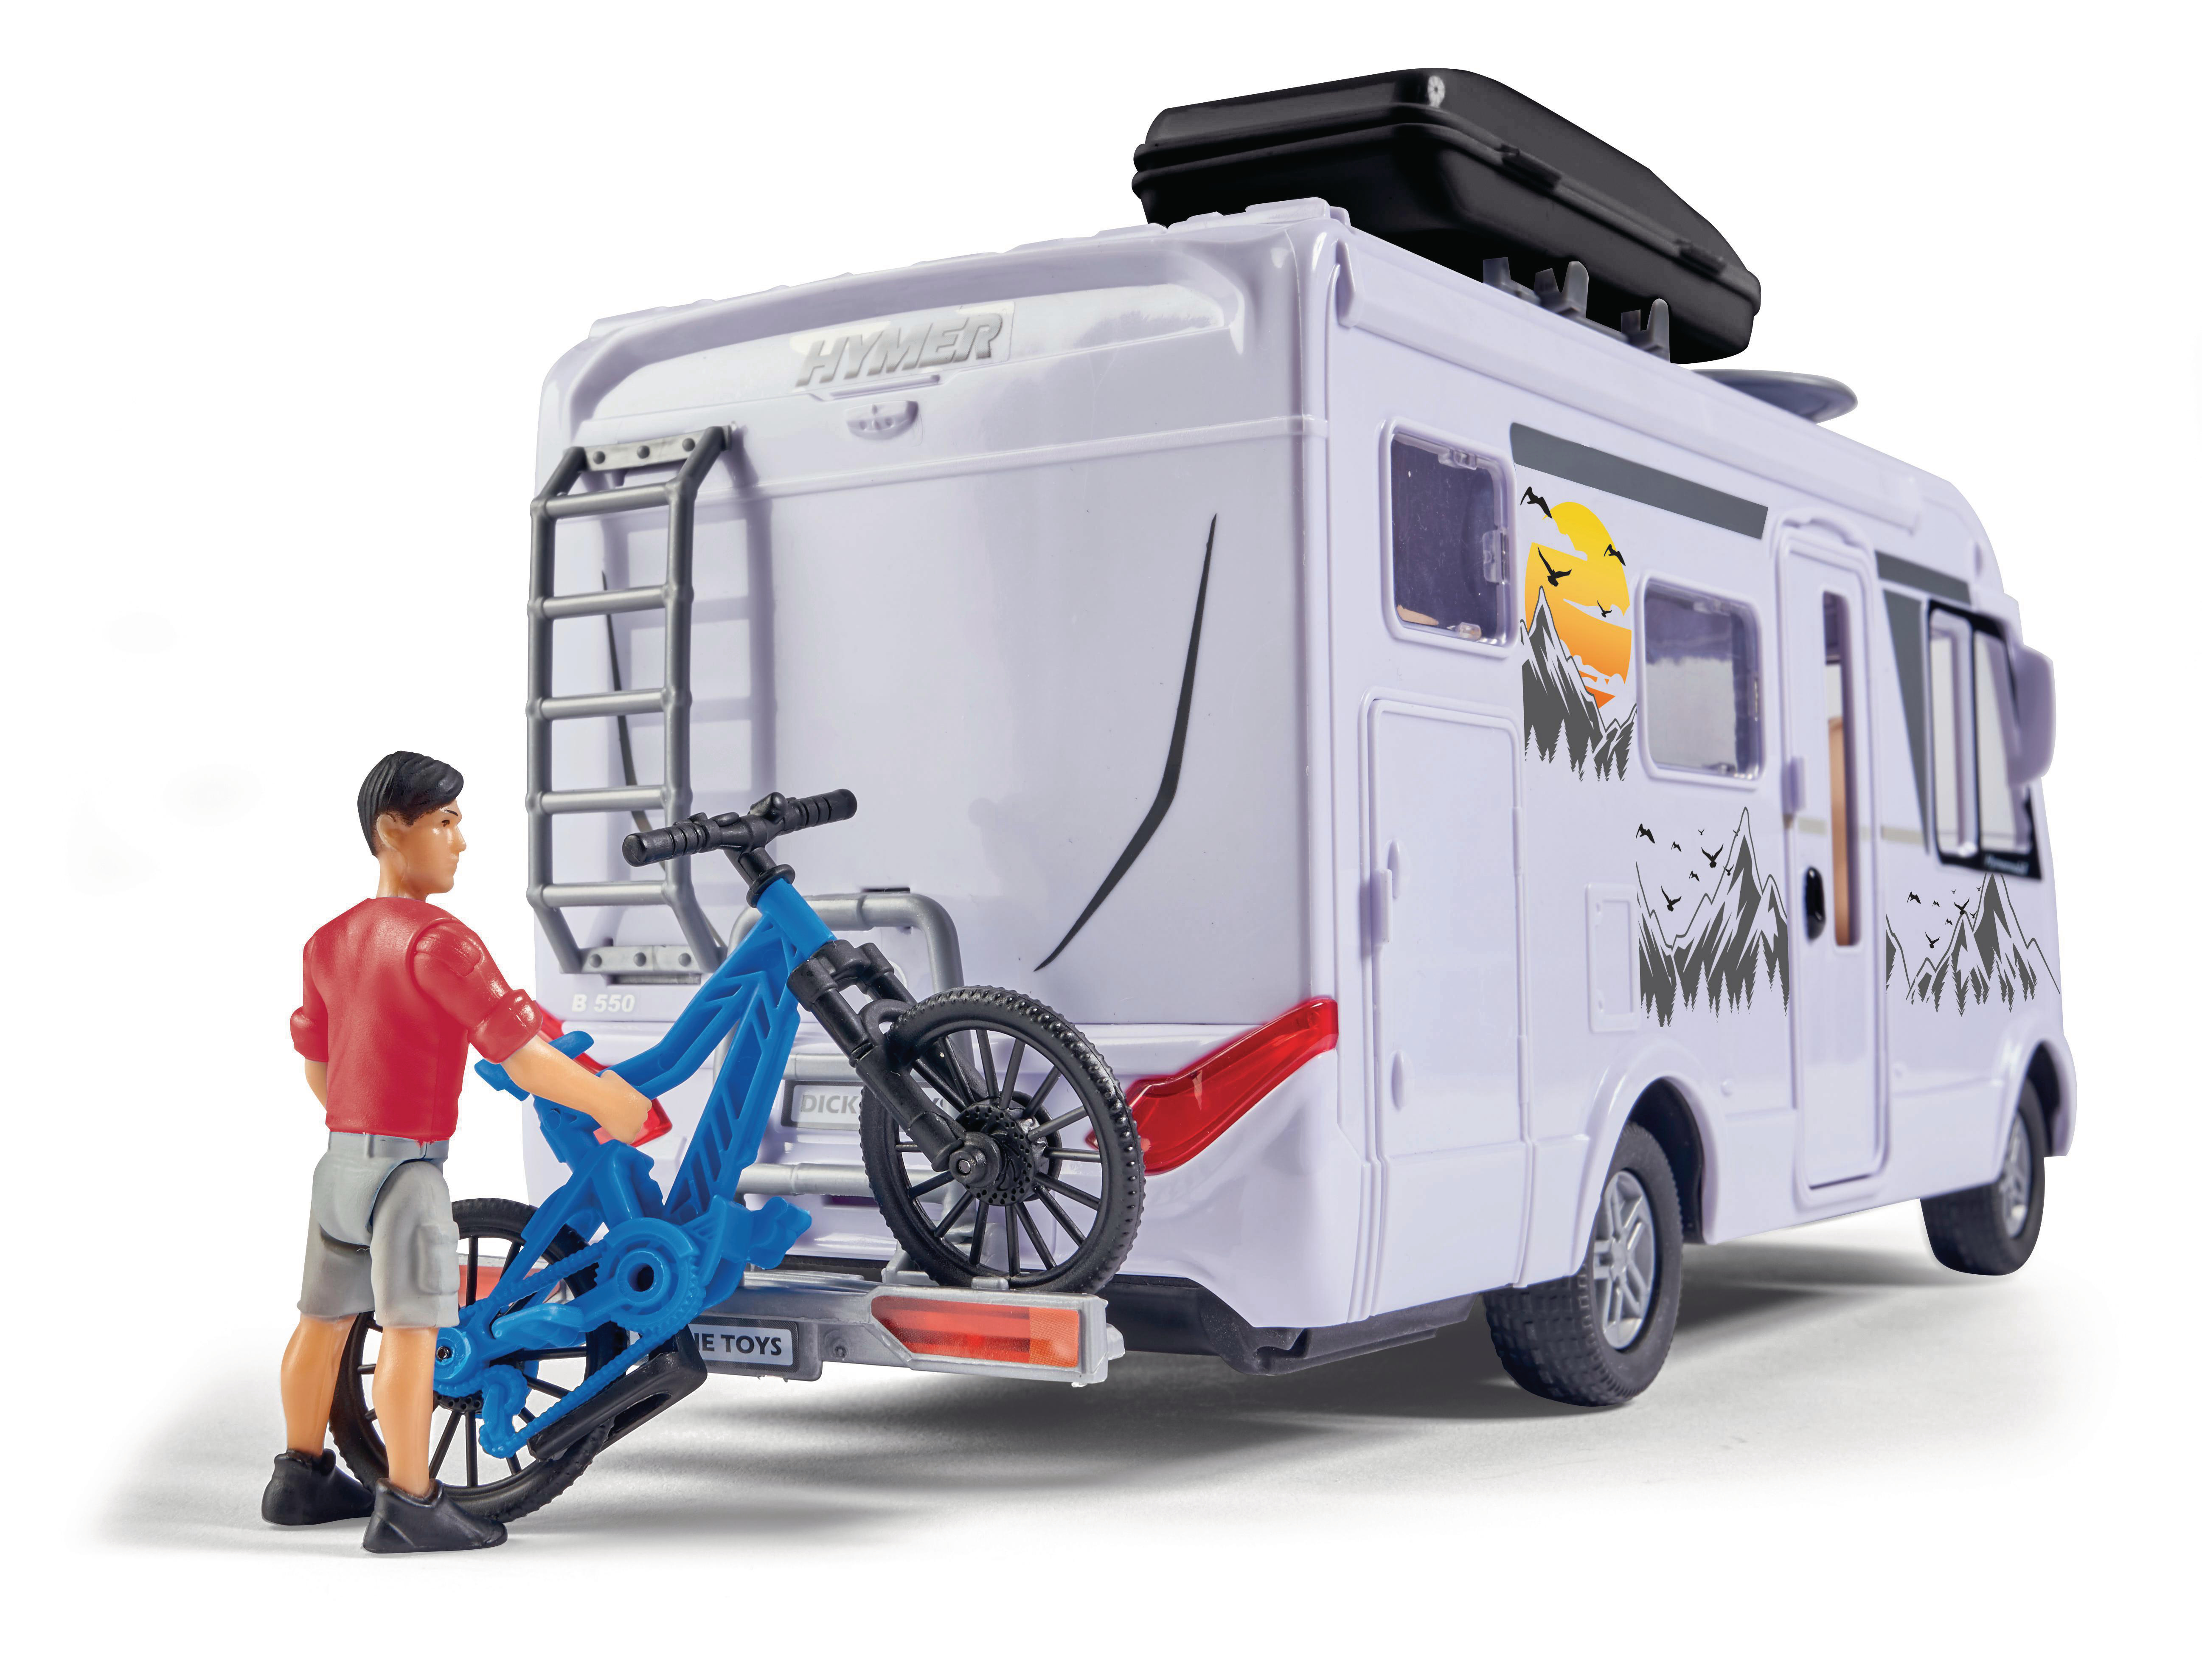 Interieur Van Set, mit Spielzeugauto DICKIE-TOYS Hymer Camping Camper Weiß